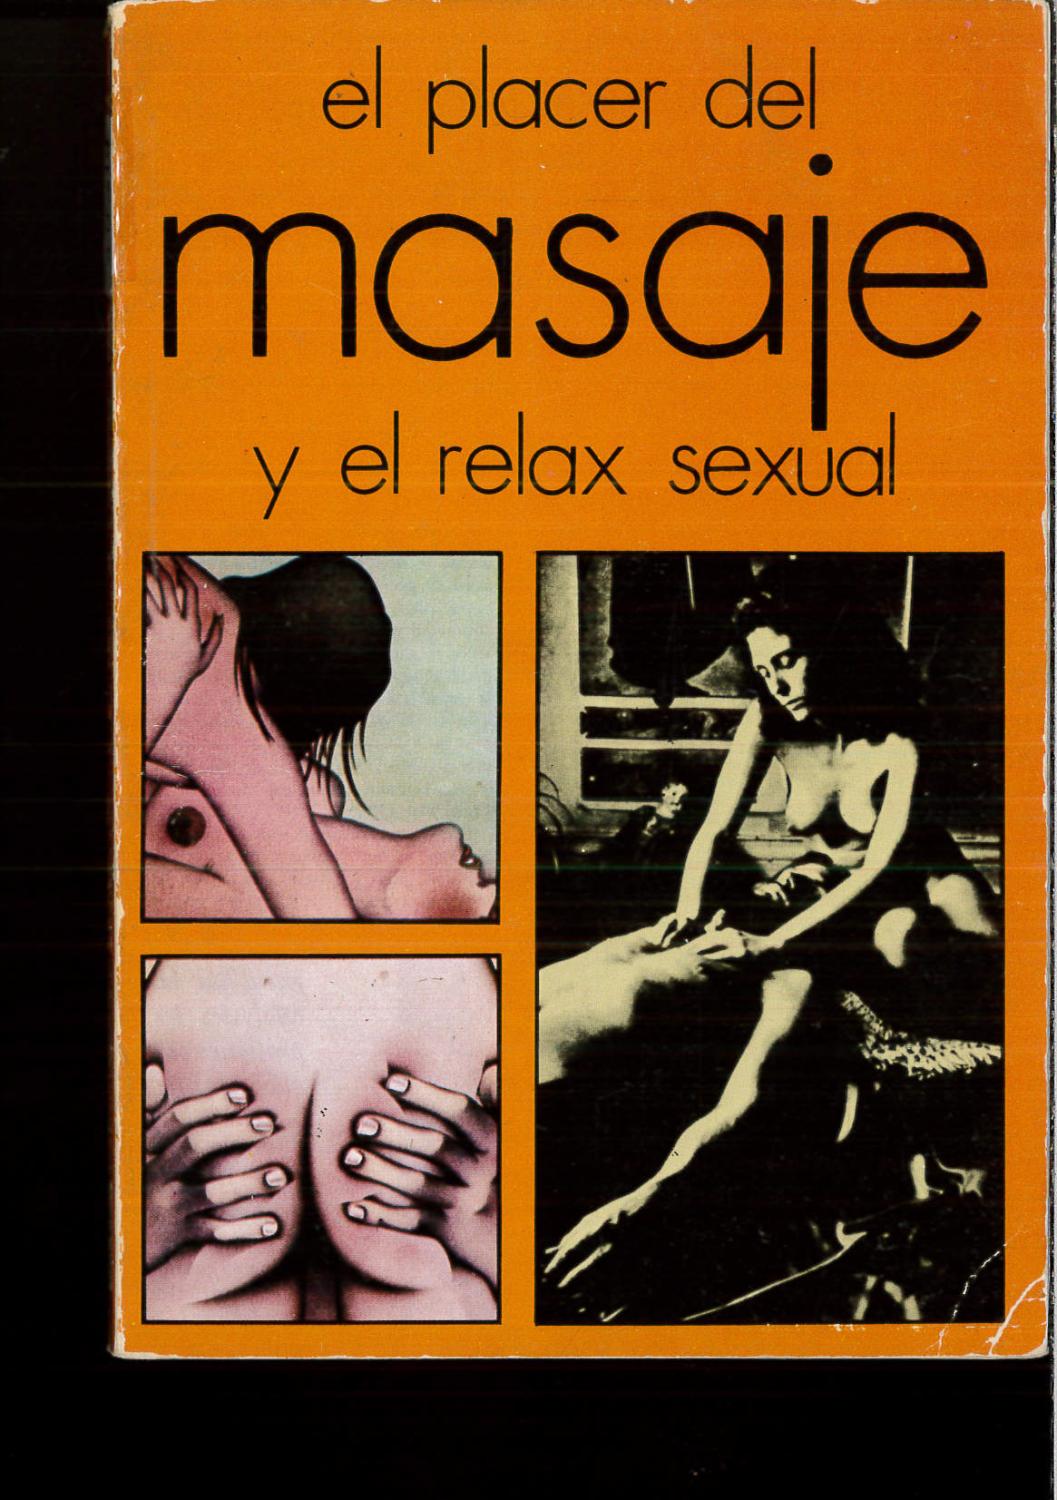 El placer del masaje y el relax sexual - Gordon Inkeles